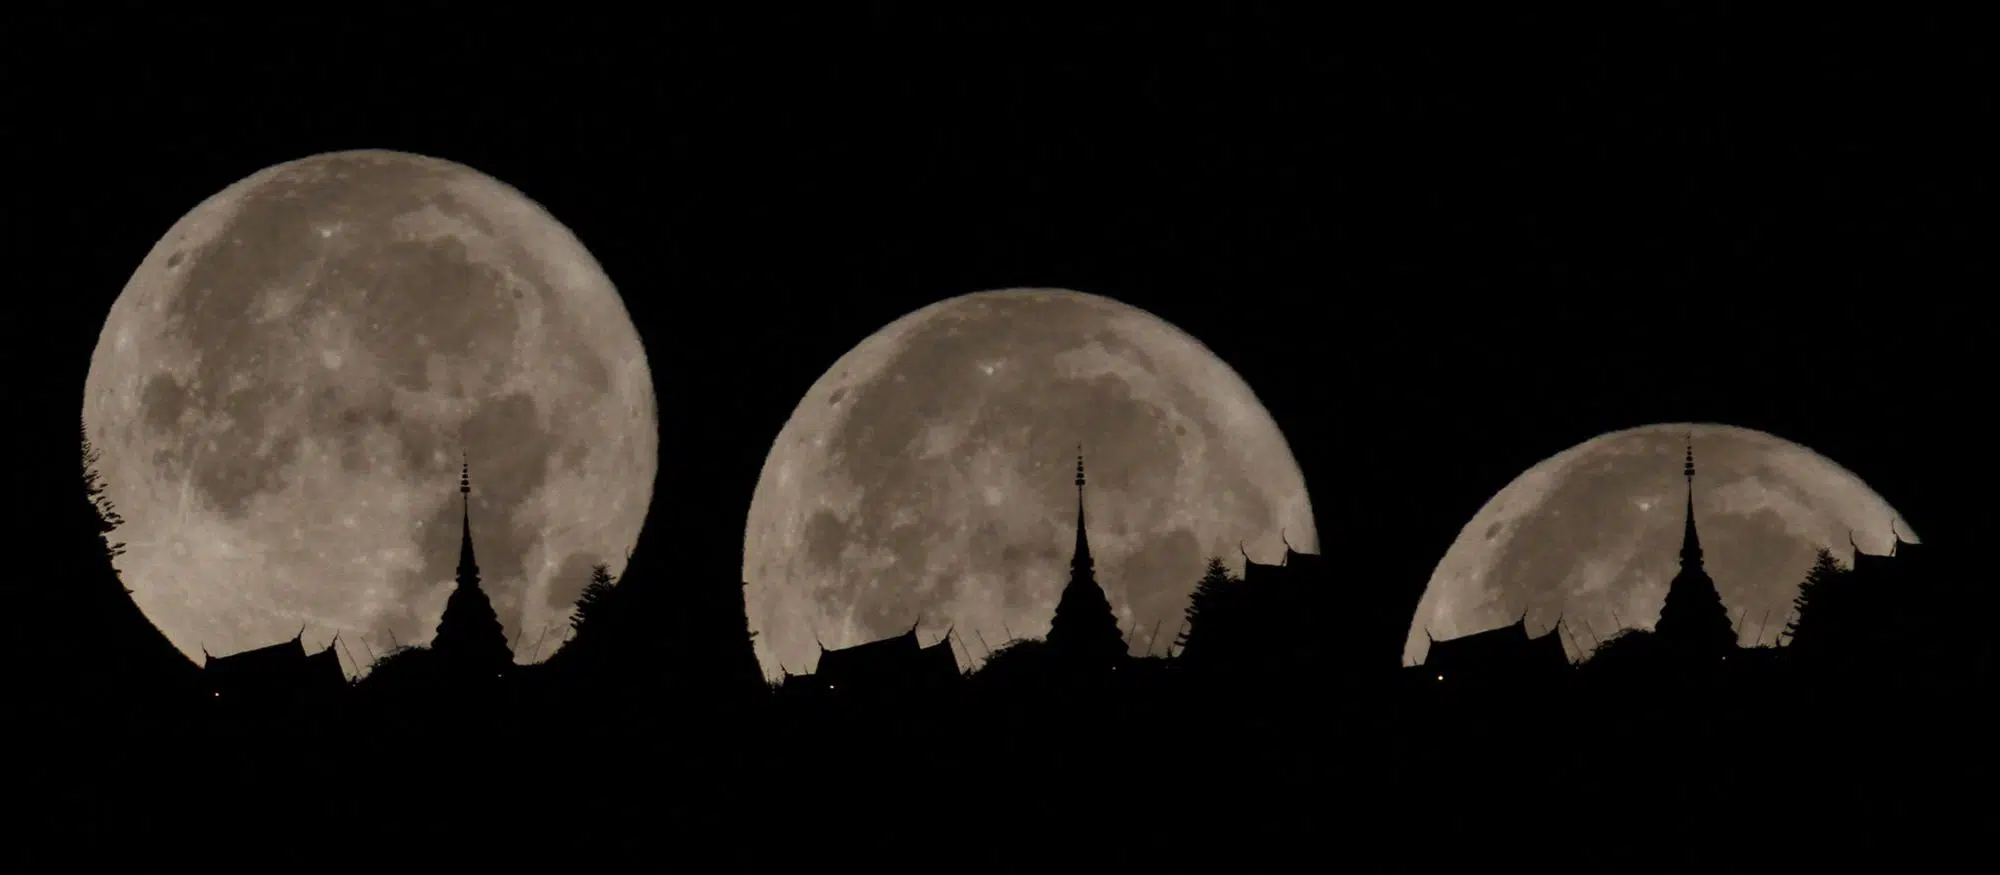 วันนี้ (8 เม.ย.) ชม "ซุปเปอร์ฟูลมูน"  จันทร์เต็มดวงใกล้โลกที่สุดในรอบปี